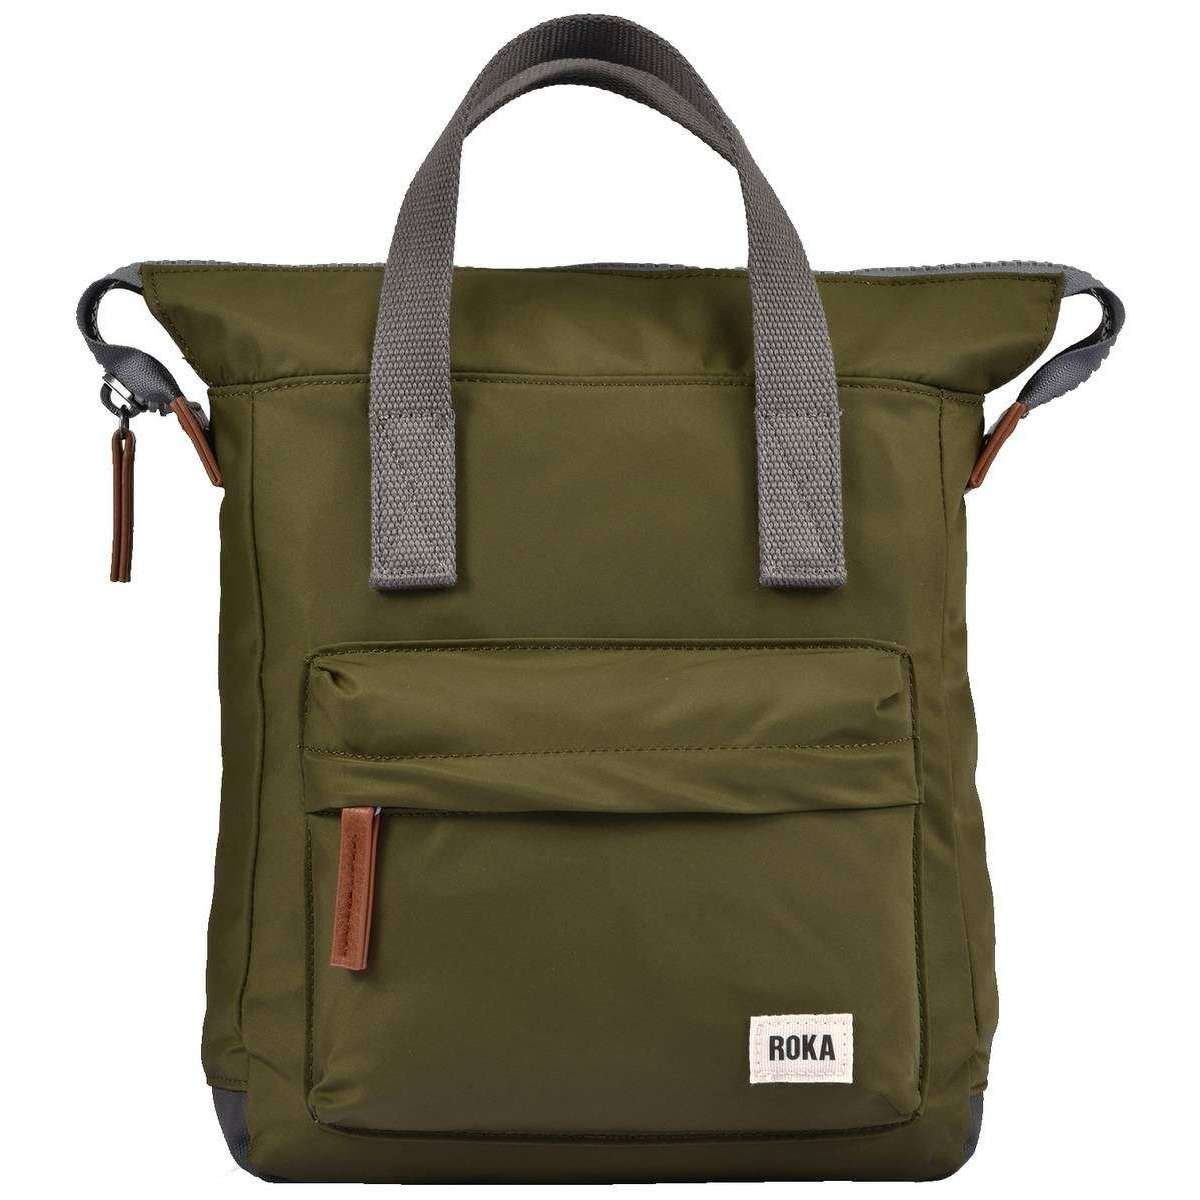 Roka Bantry B Small Sustainable Nylon Backpack - Military Green